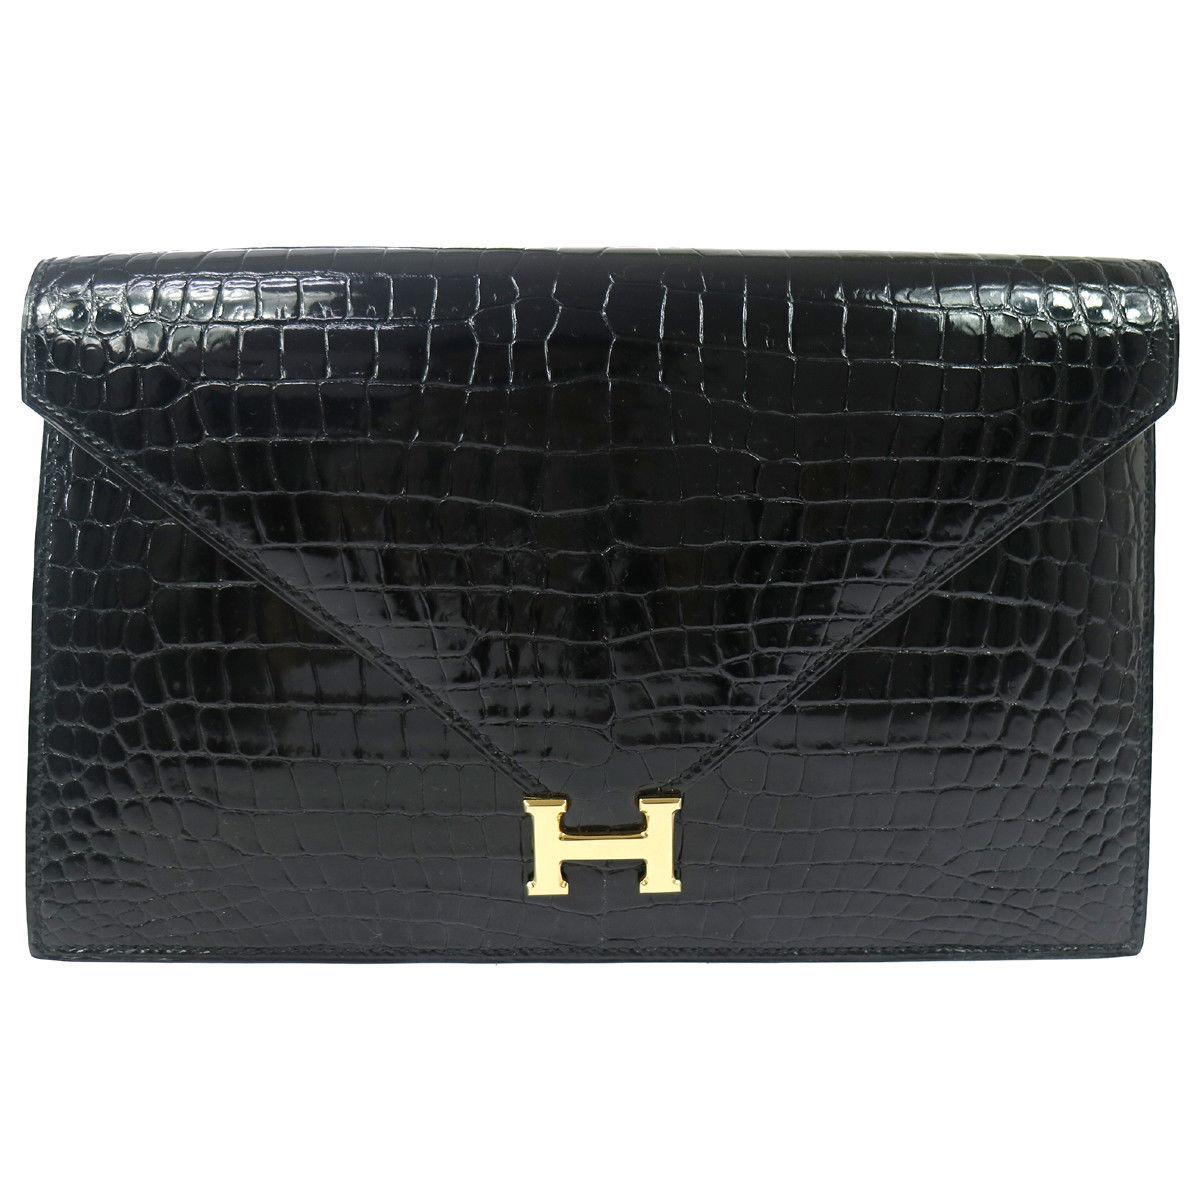 Hermes Black Crocodile Leather Gold 'H" Emblem Logo Envelope Flap Clutch Bag